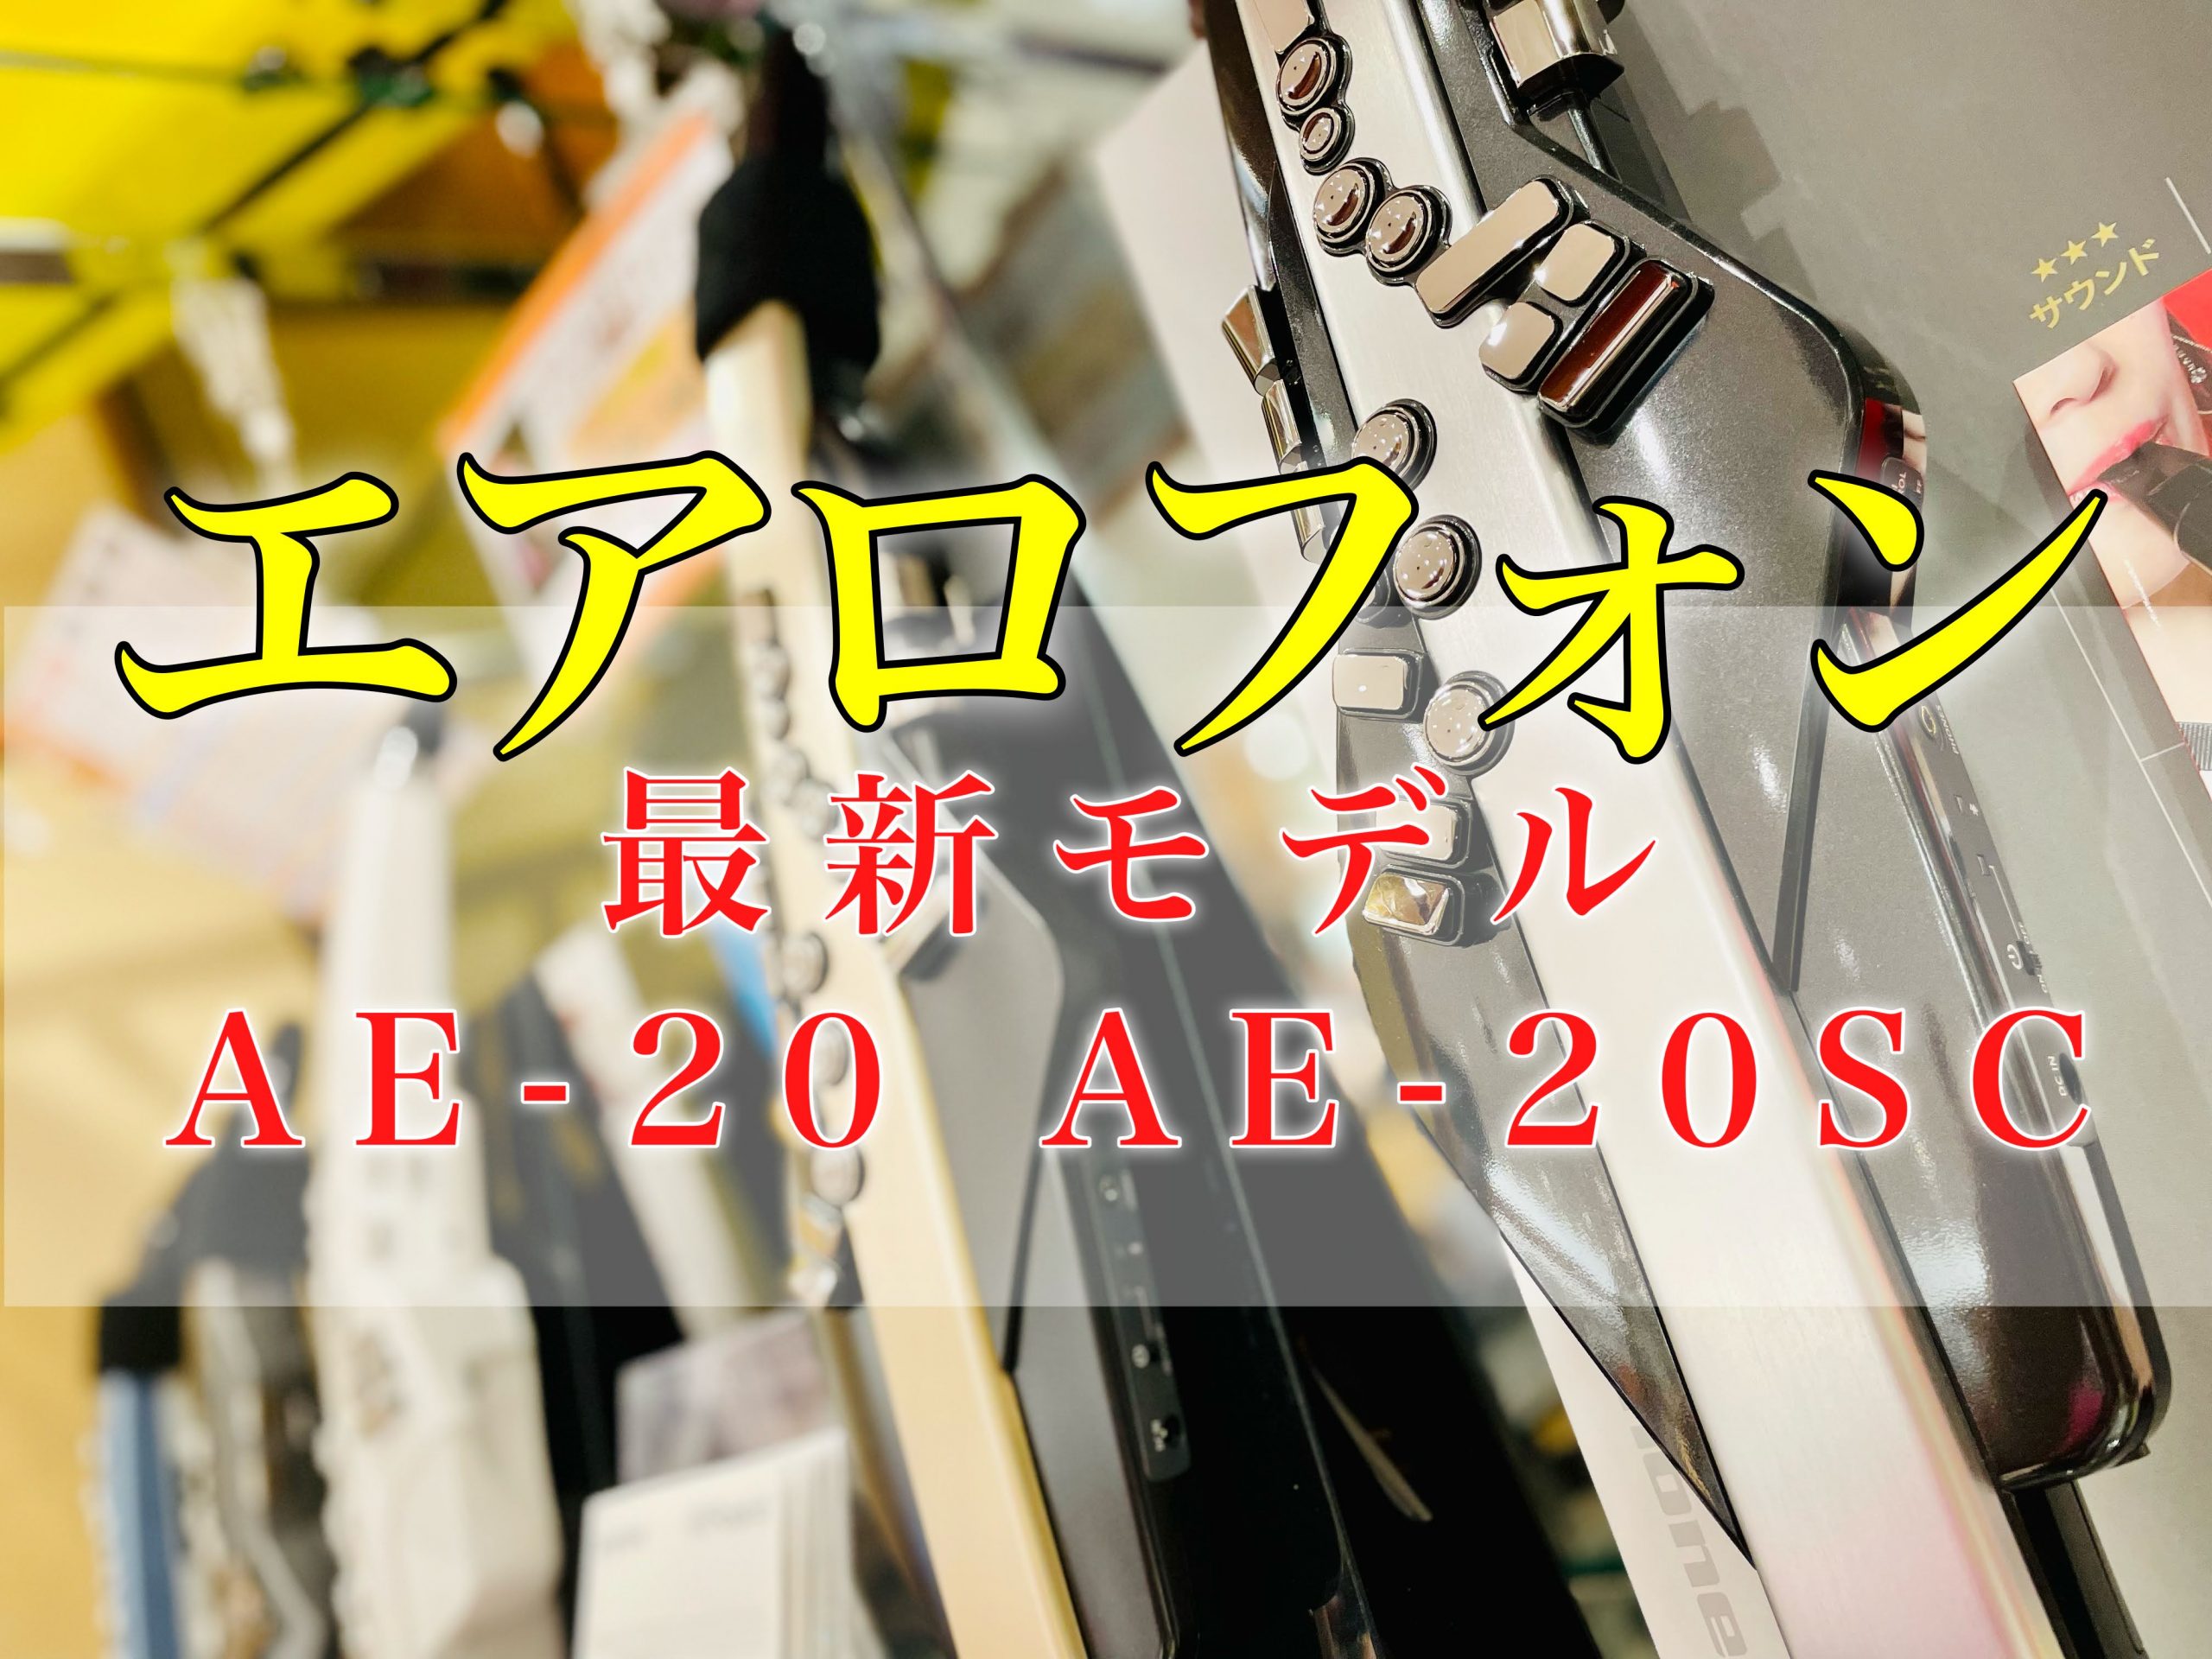 ローランド エアロフォン最新モデル「AE-20」「AE-20SC」登場！橿原店で試奏できます♪